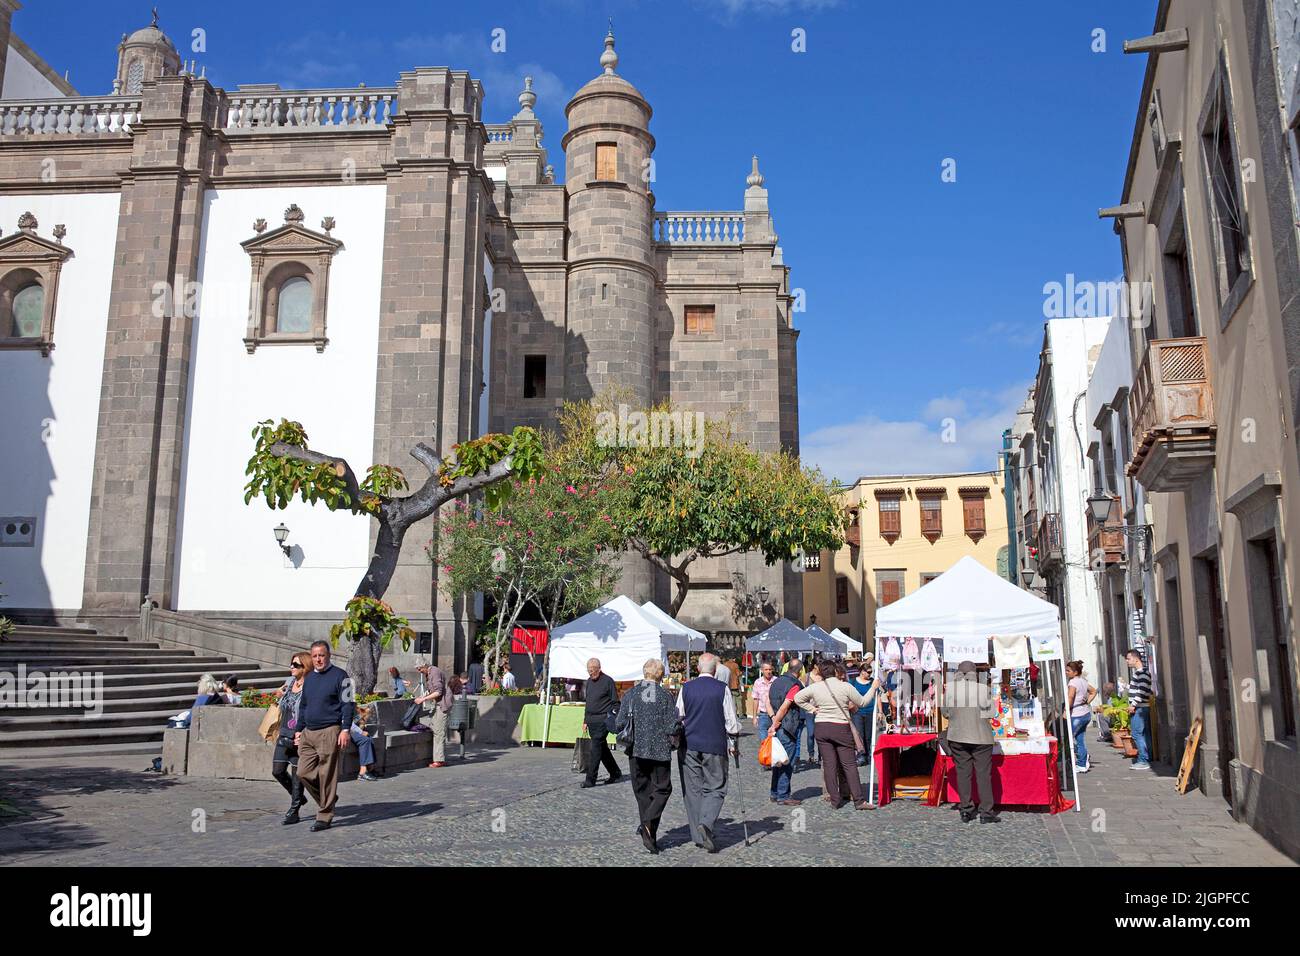 Mercato dietro la Cattedrale di Santa Ana, Plaza del Pilar Nuevo, centro storico, Vegueta, Las Palmas, Grand Canary, Isole Canarie, Spagna, Europa Foto Stock